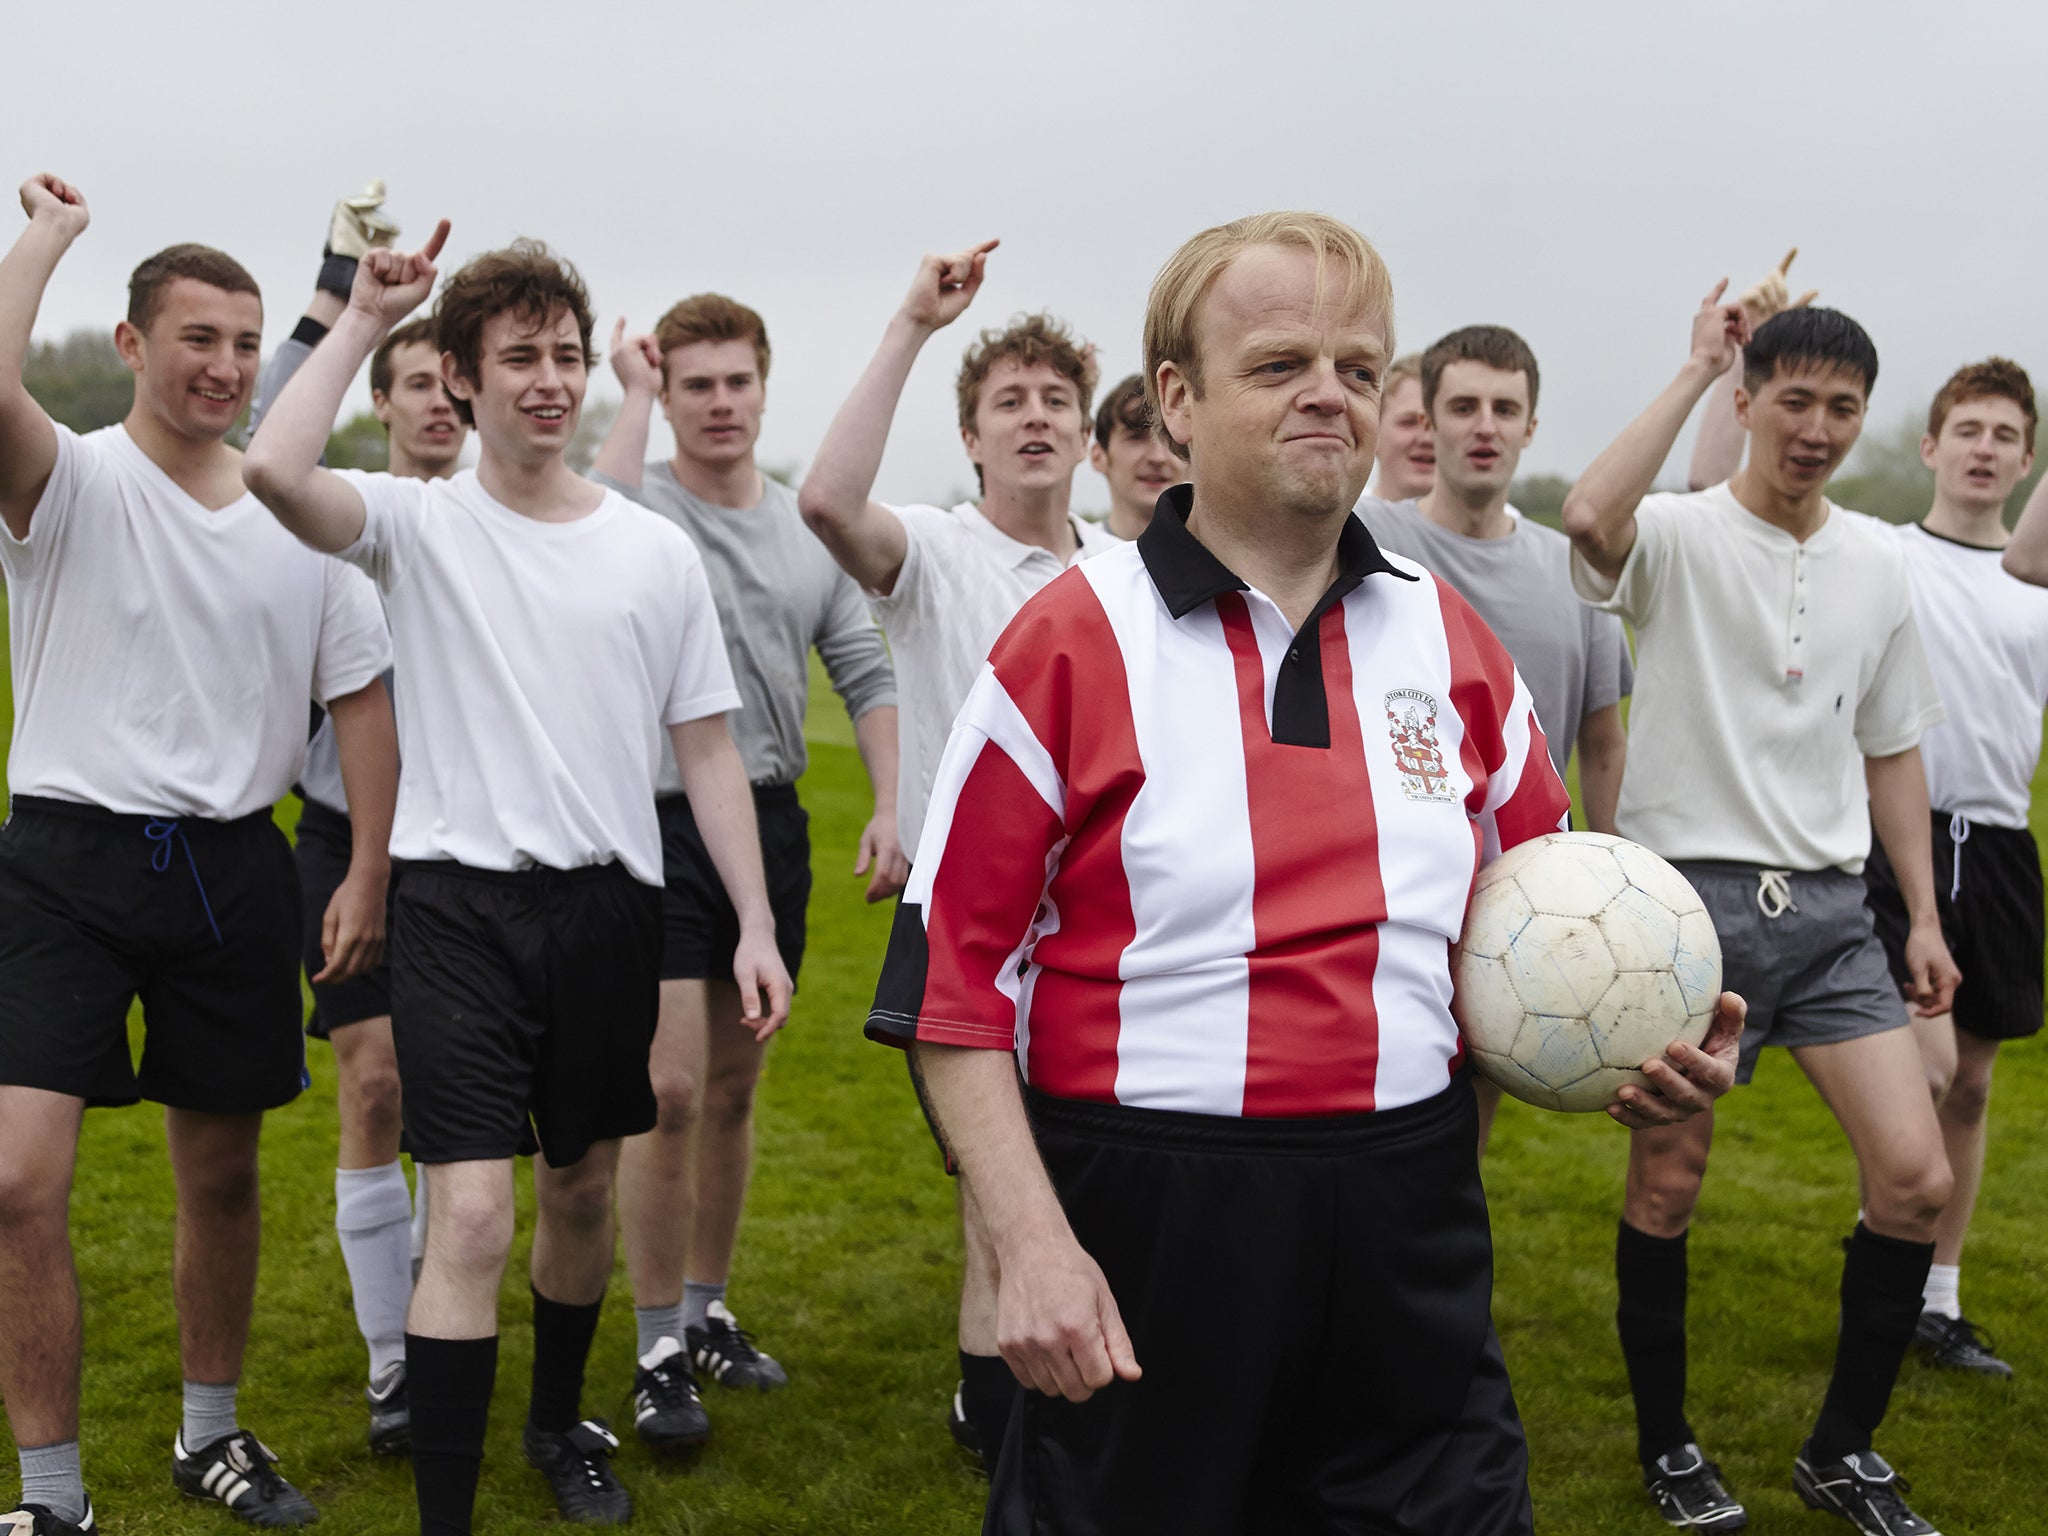 Having a ball: Toby Jones as Neil Baldwin in ‘Marvellous’